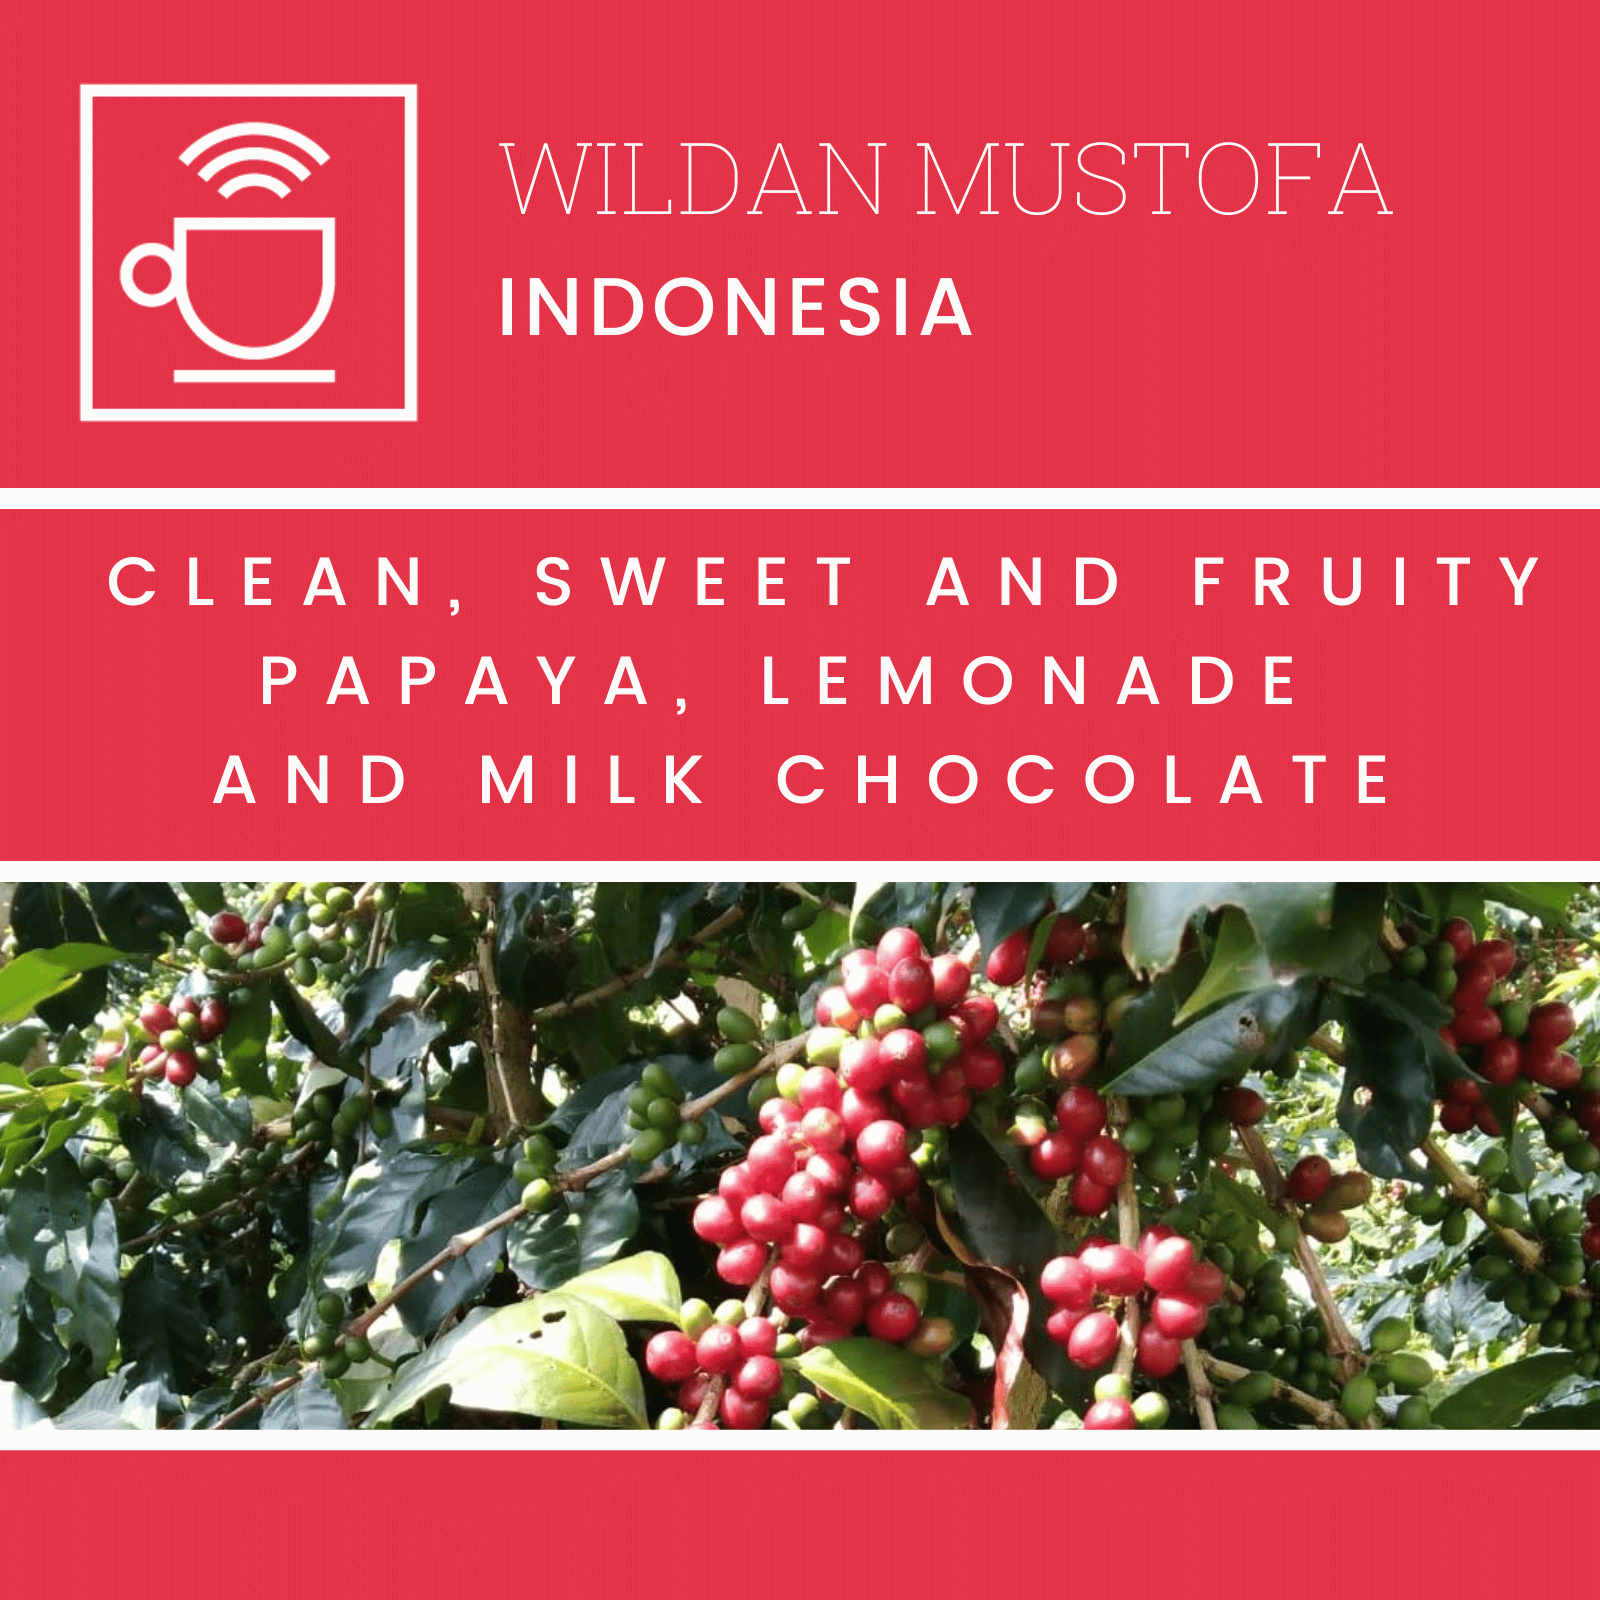 kaffelabel wildan mustofa, indonesien, clean, sød og frugtig, papaya, lemonade og mælkechokolade, kaffebær på kaffetræ